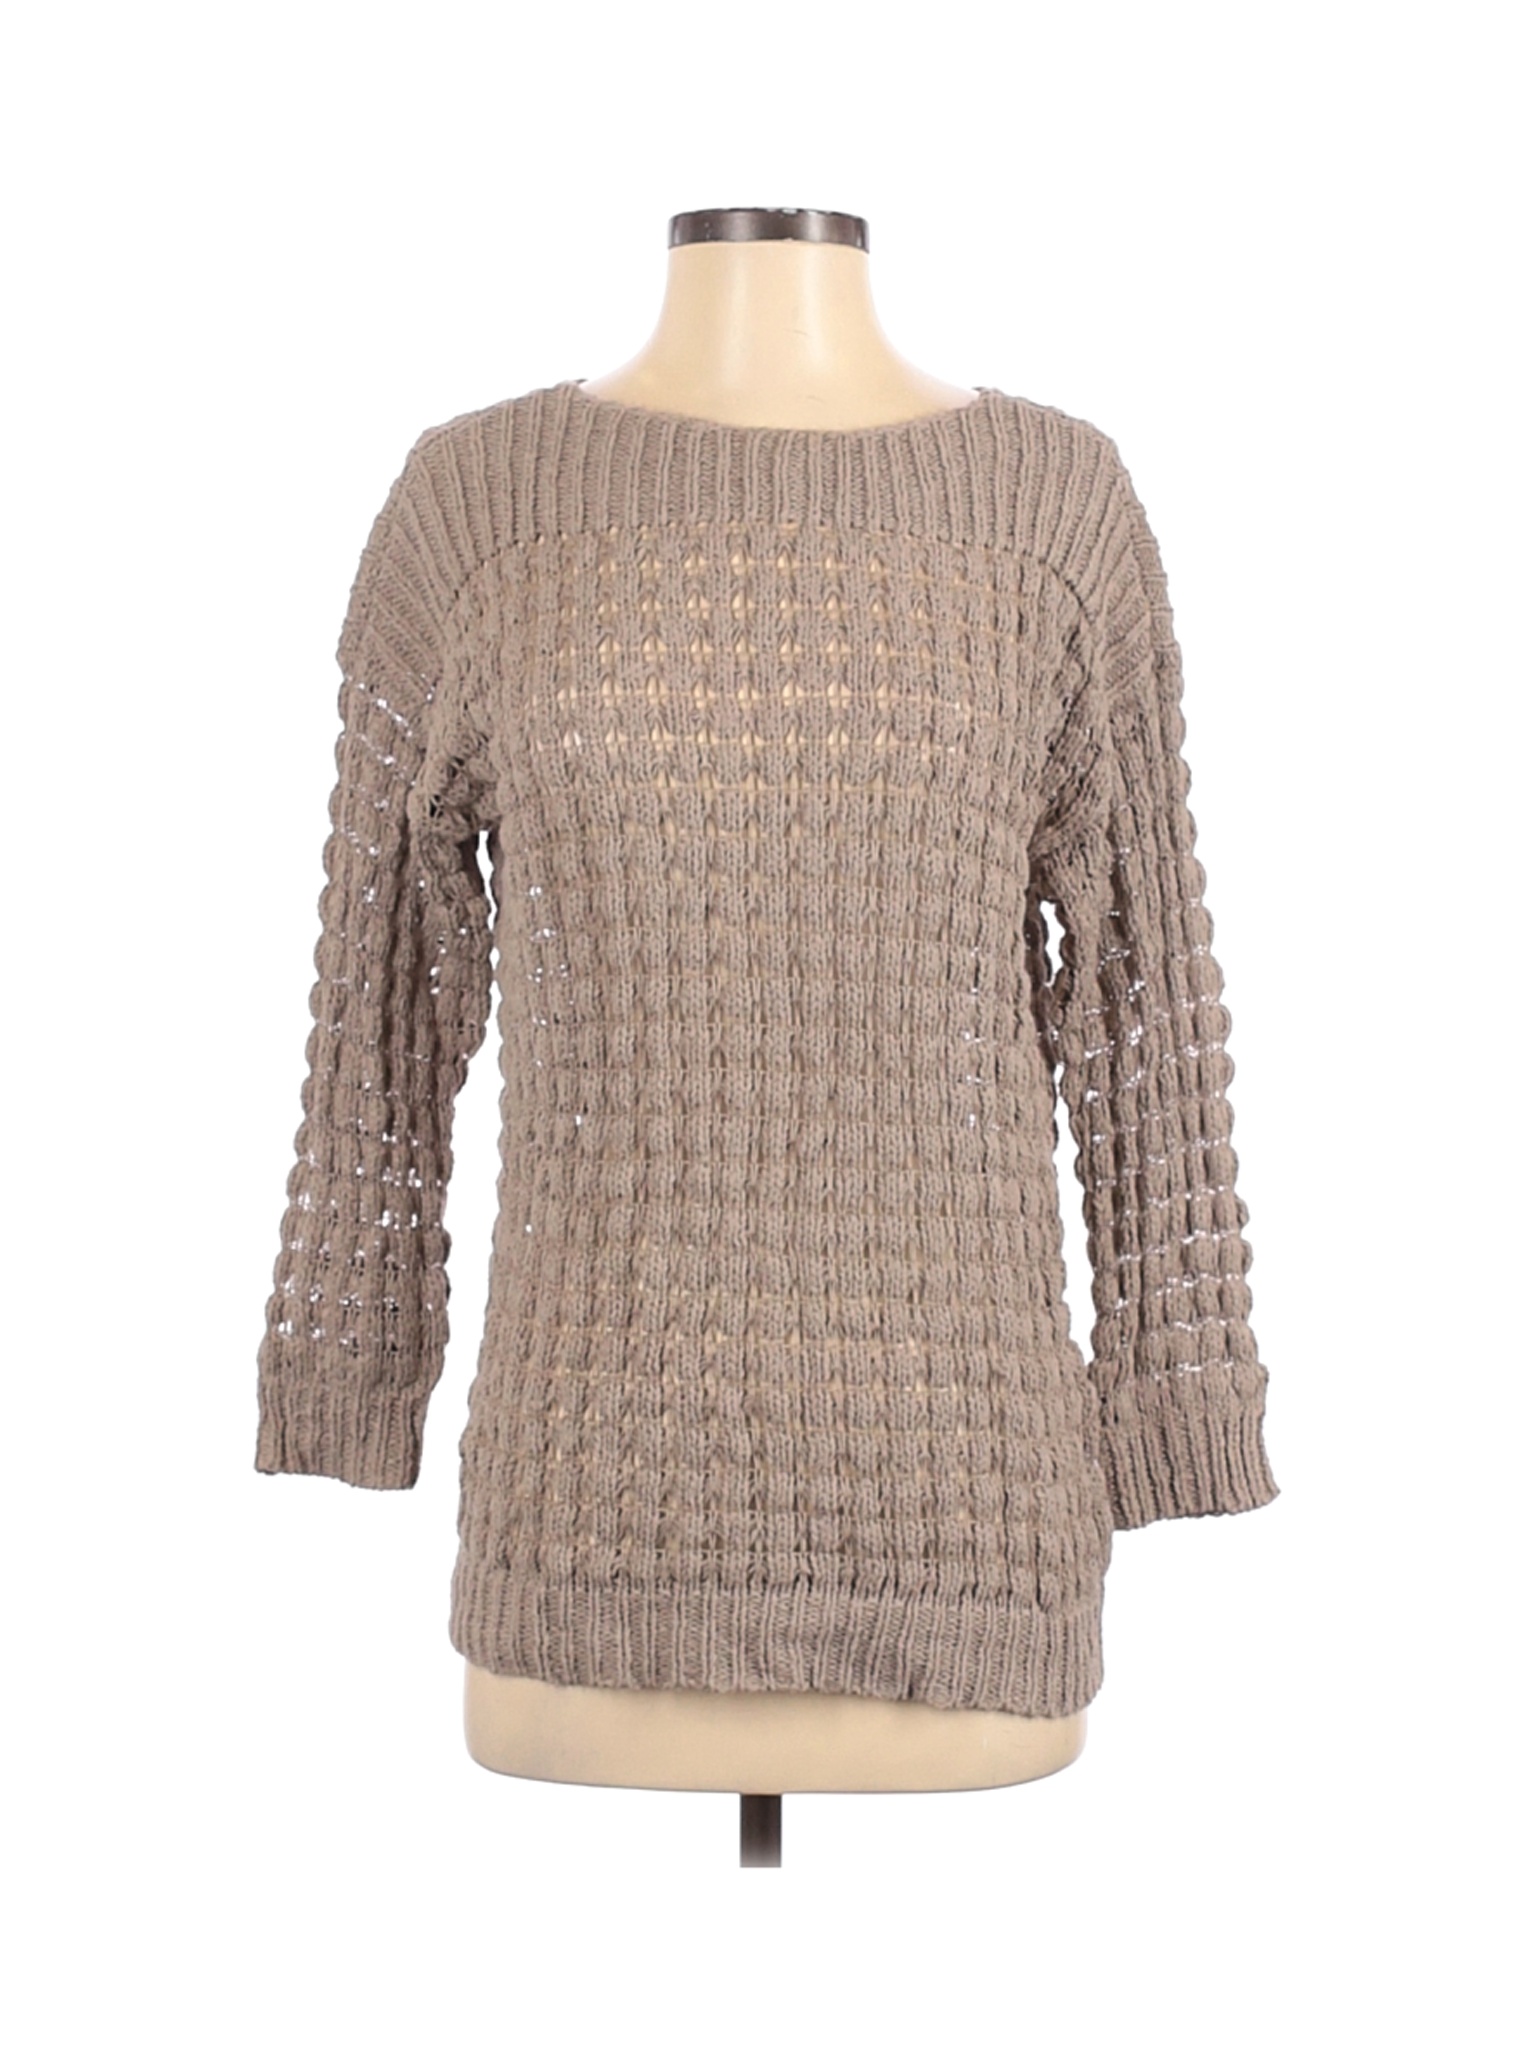 Apt. 9 Women Brown Pullover Sweater S | eBay